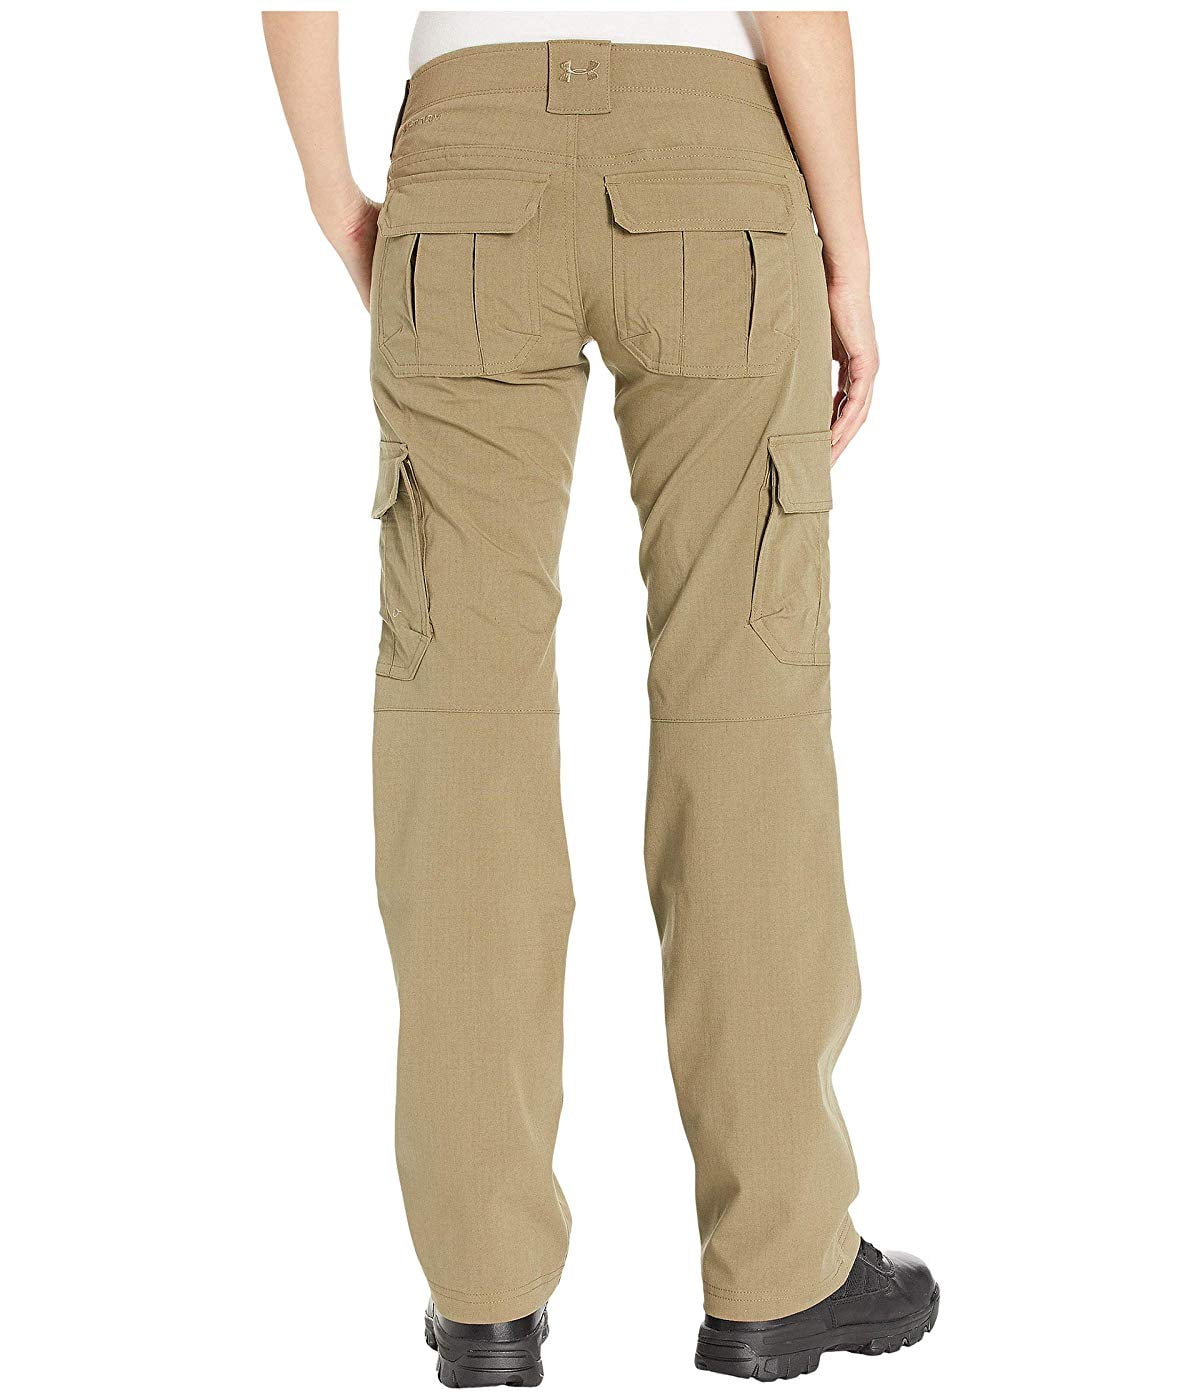 Under Armour women's Tactical Patrol Pants II - Walmart.com